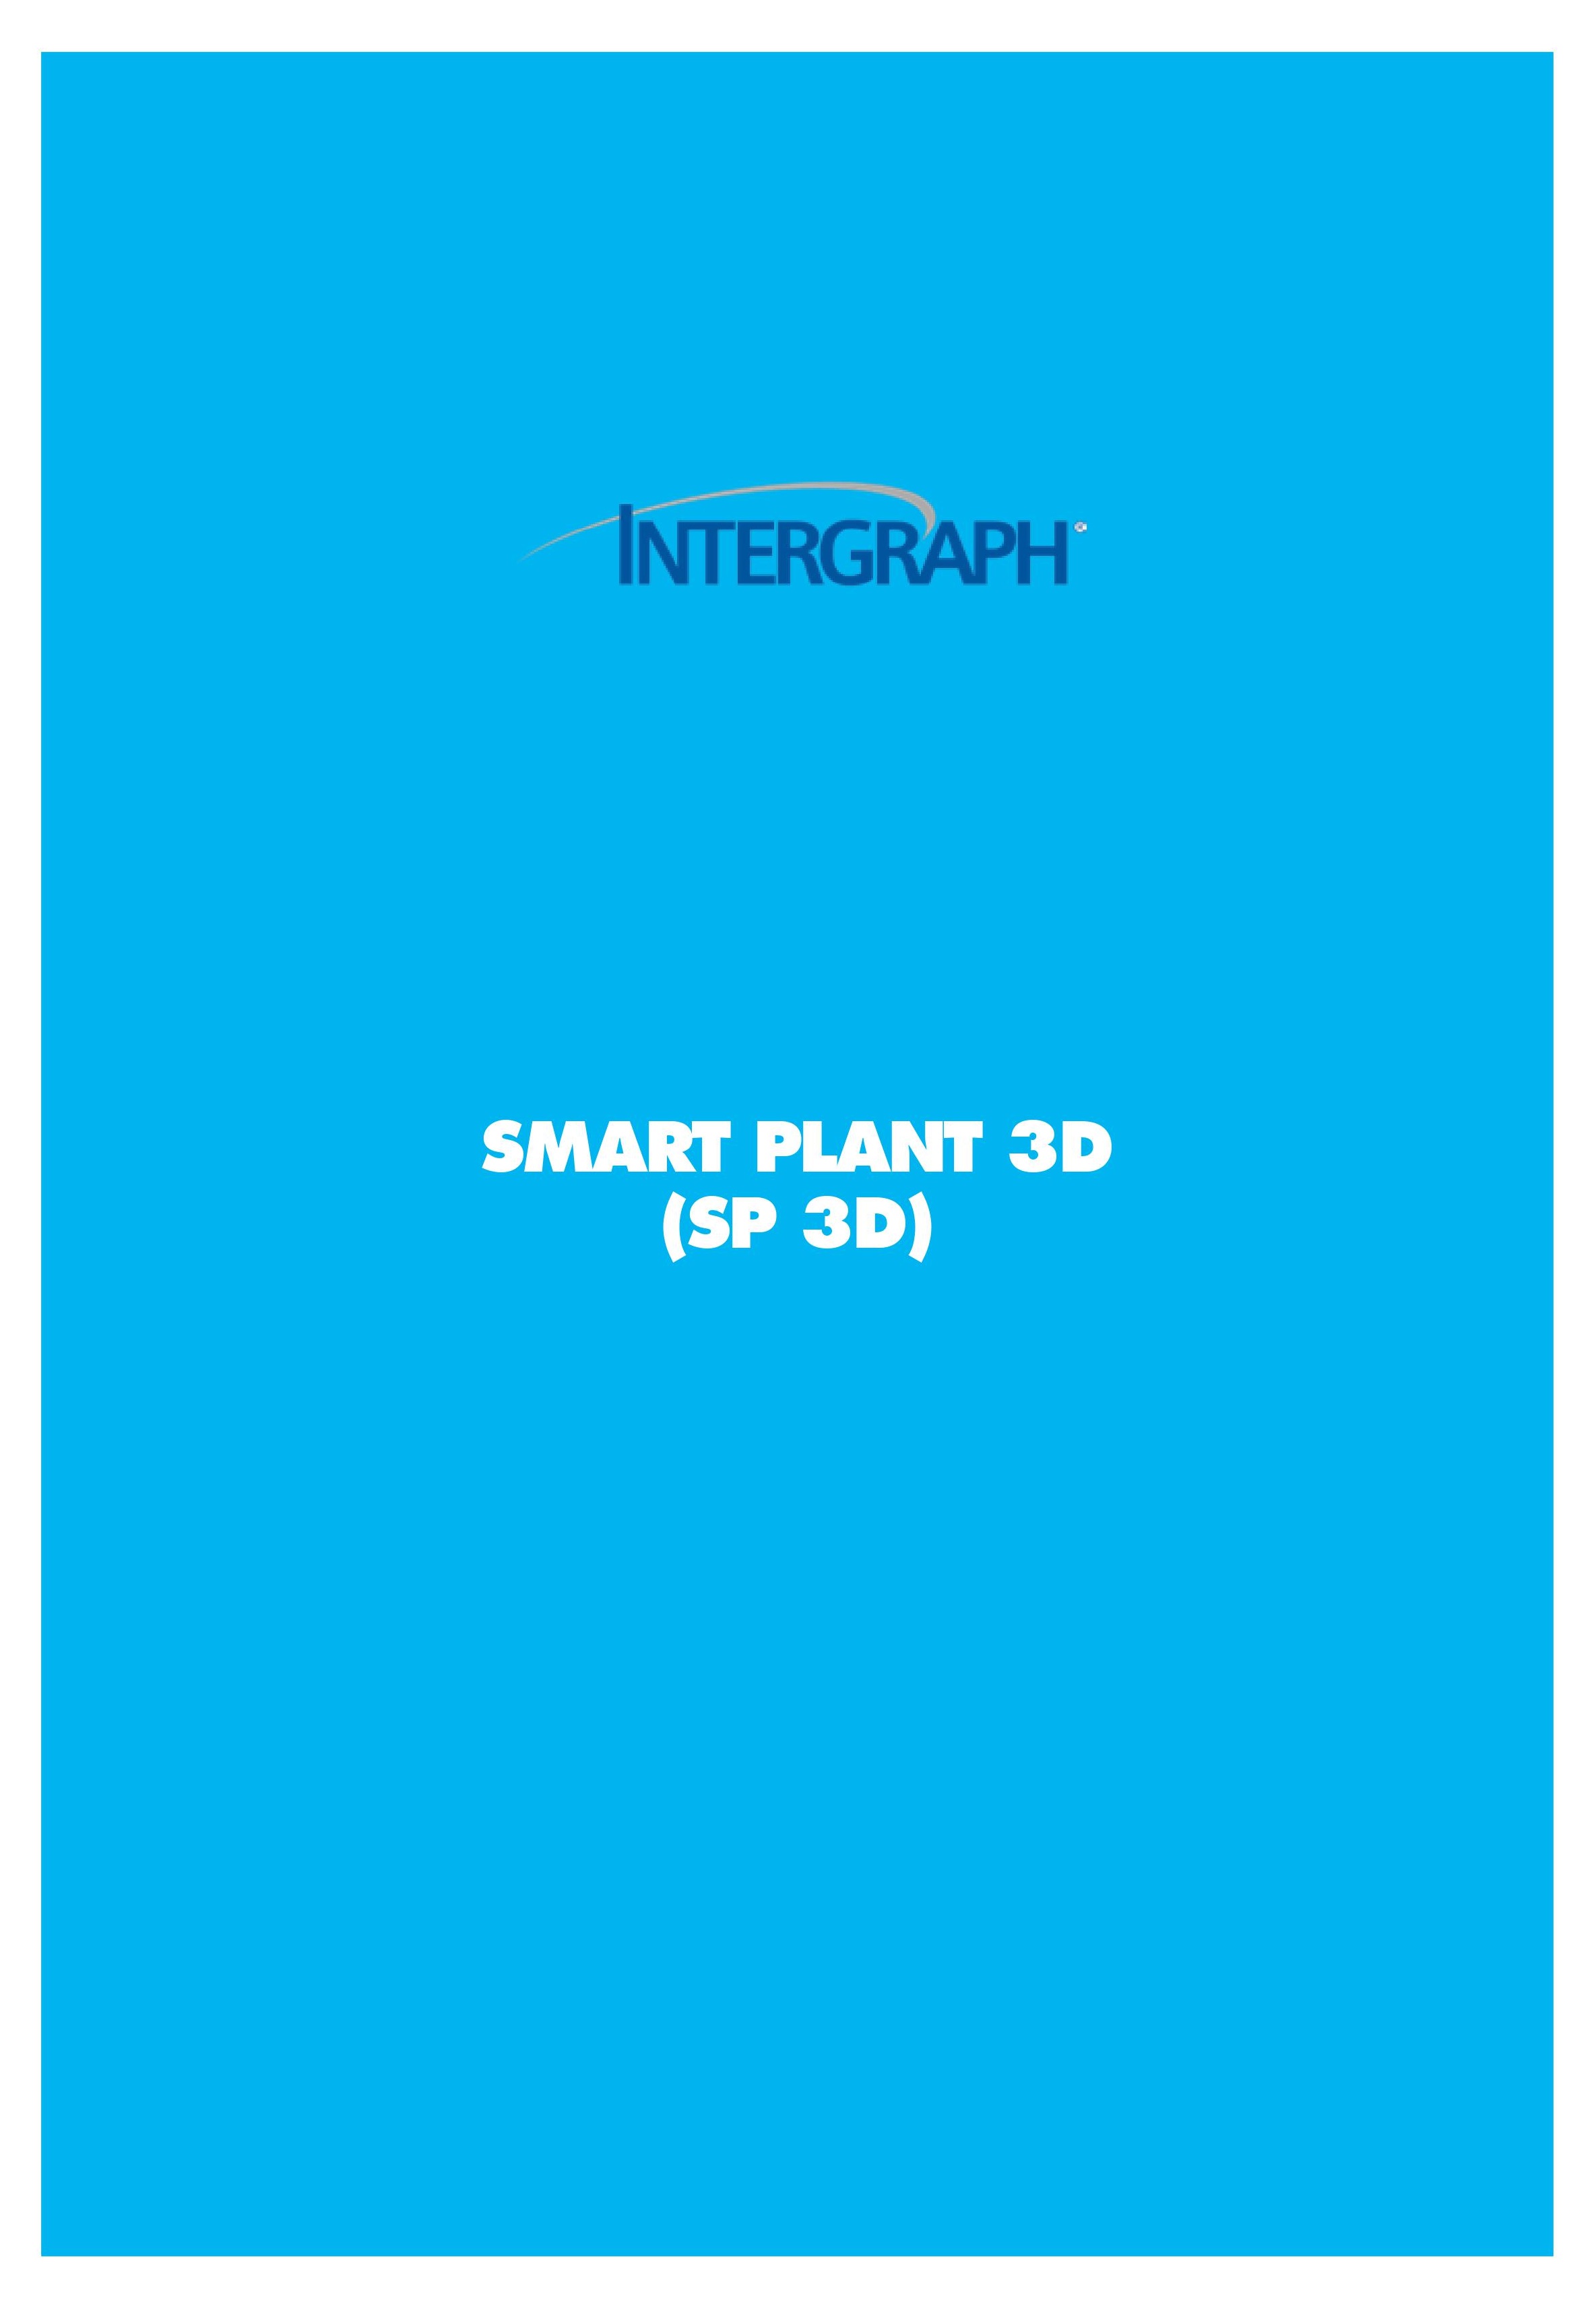 smart plant 3d SP3D course online course